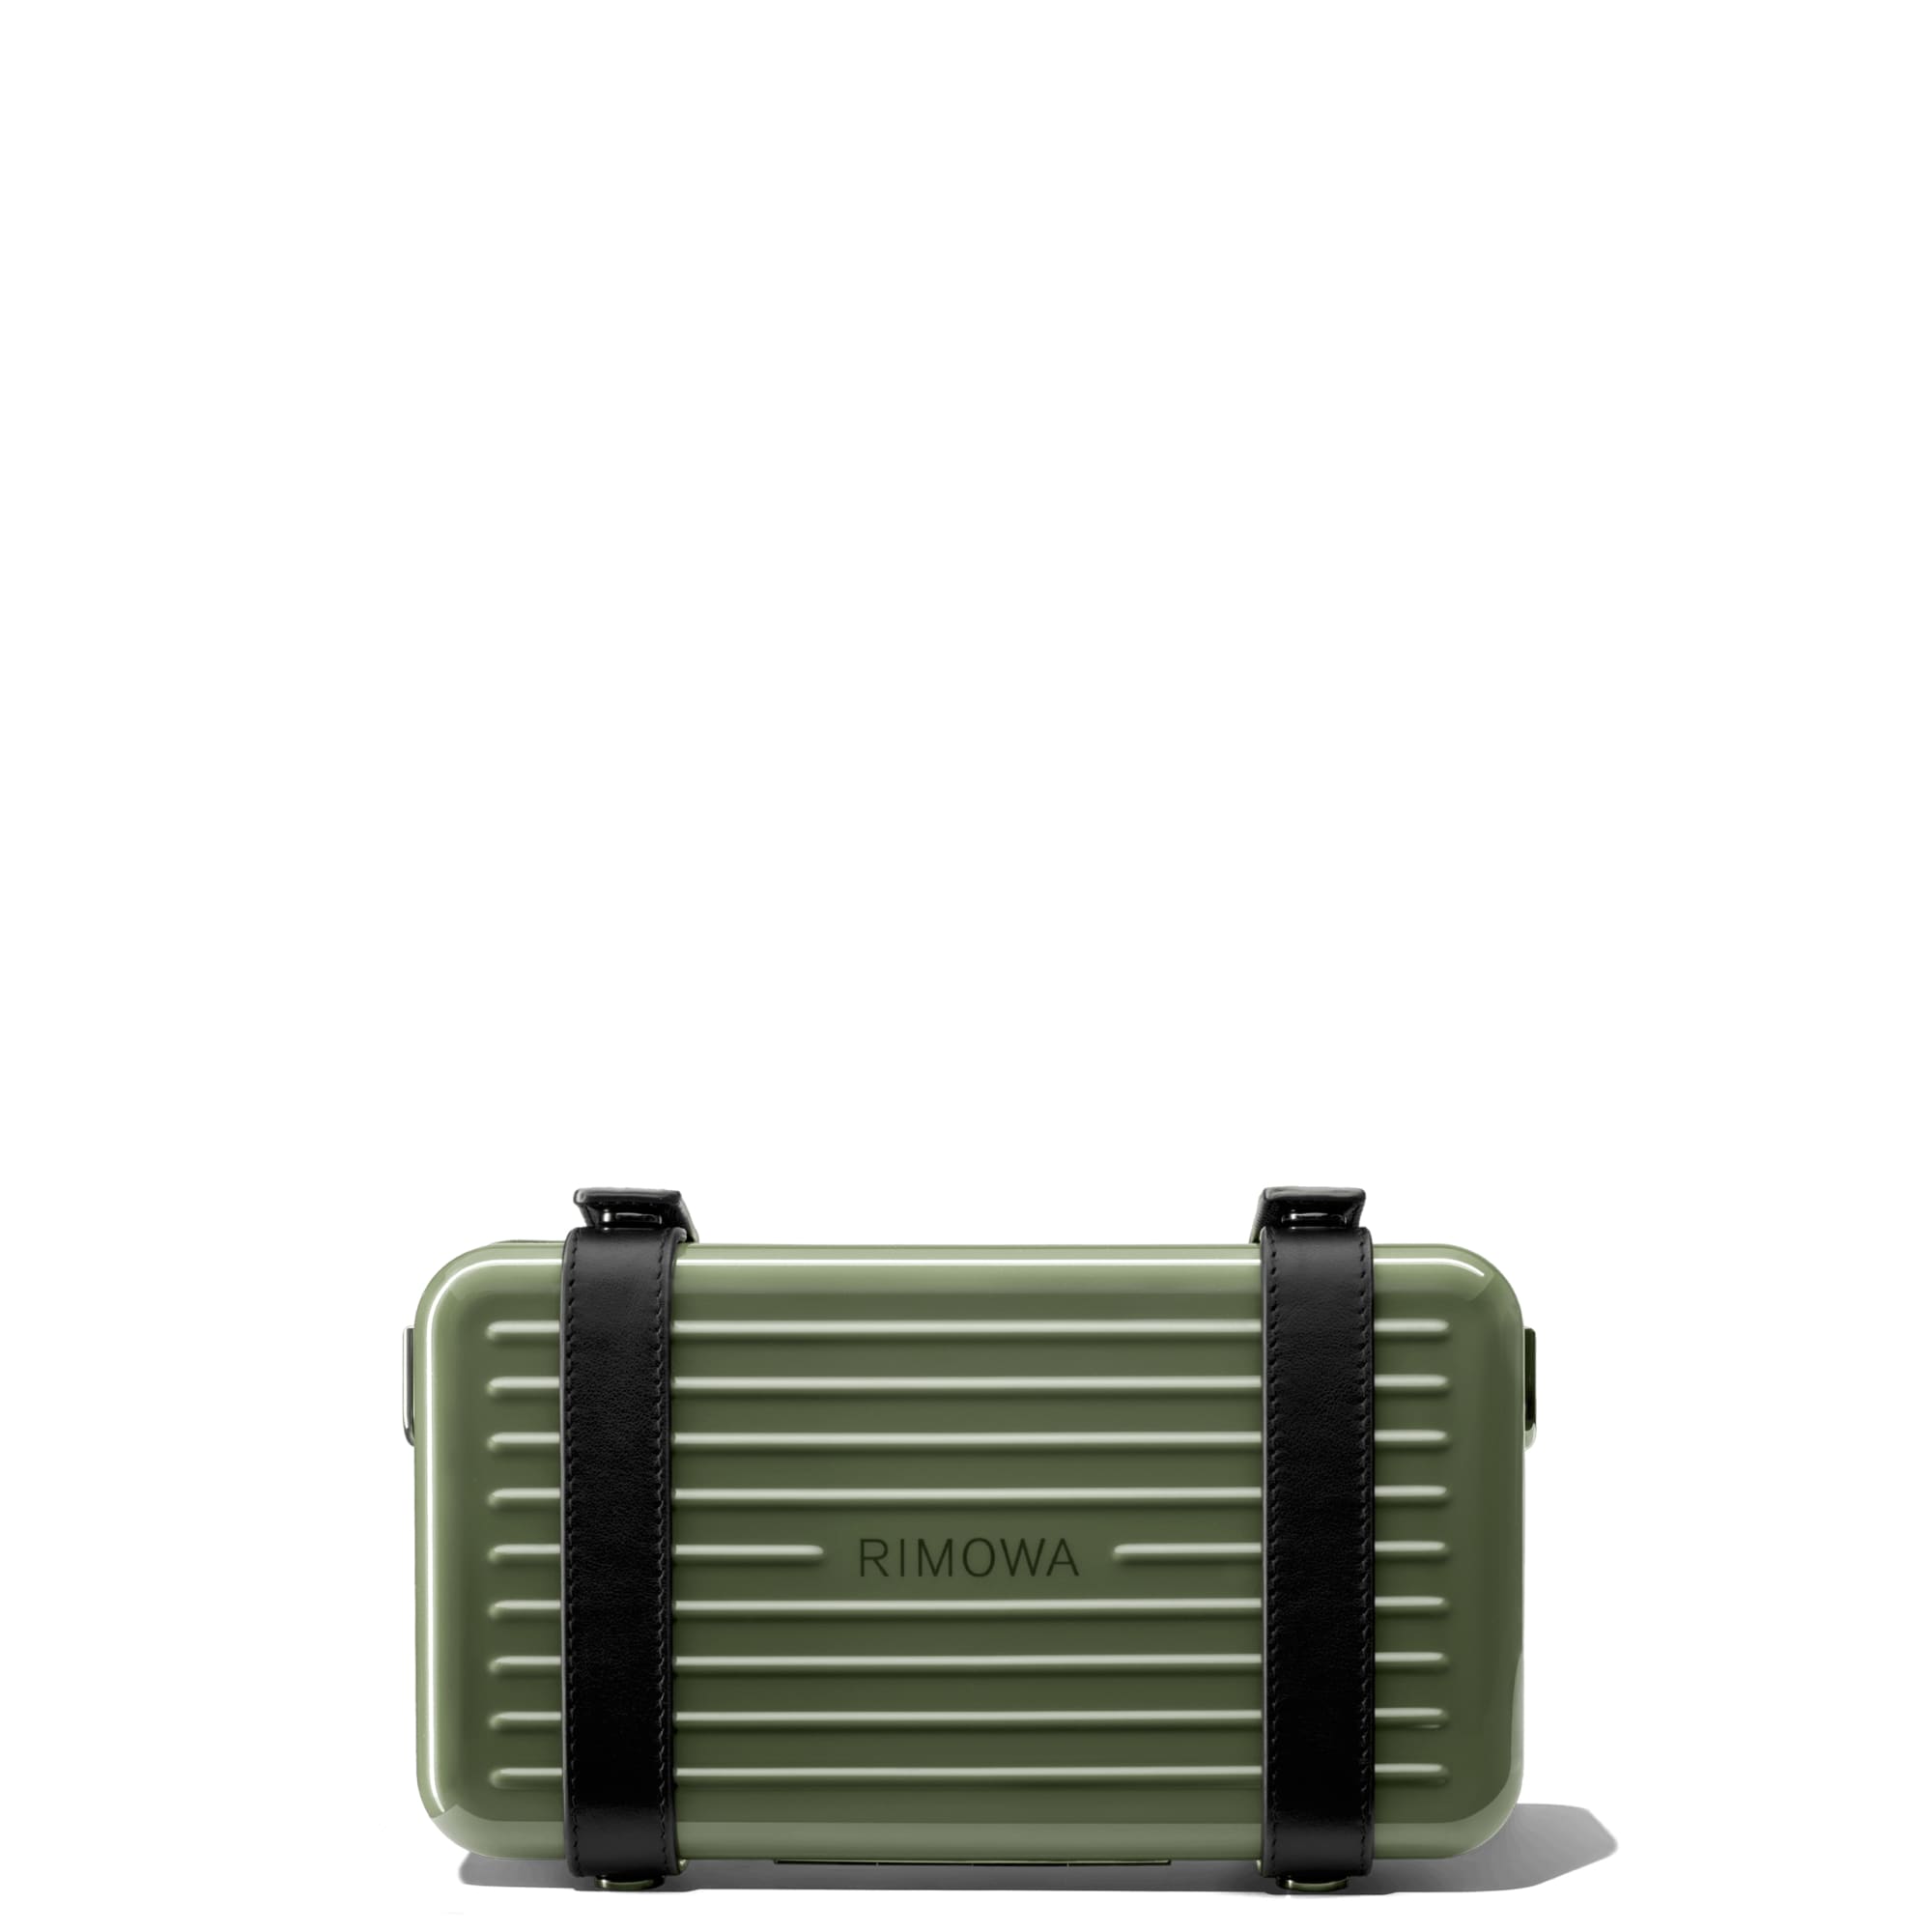 「リモワ」が2way仕様の新作スモールバッグ発売、スーツケースと同様にポリカーボネート製